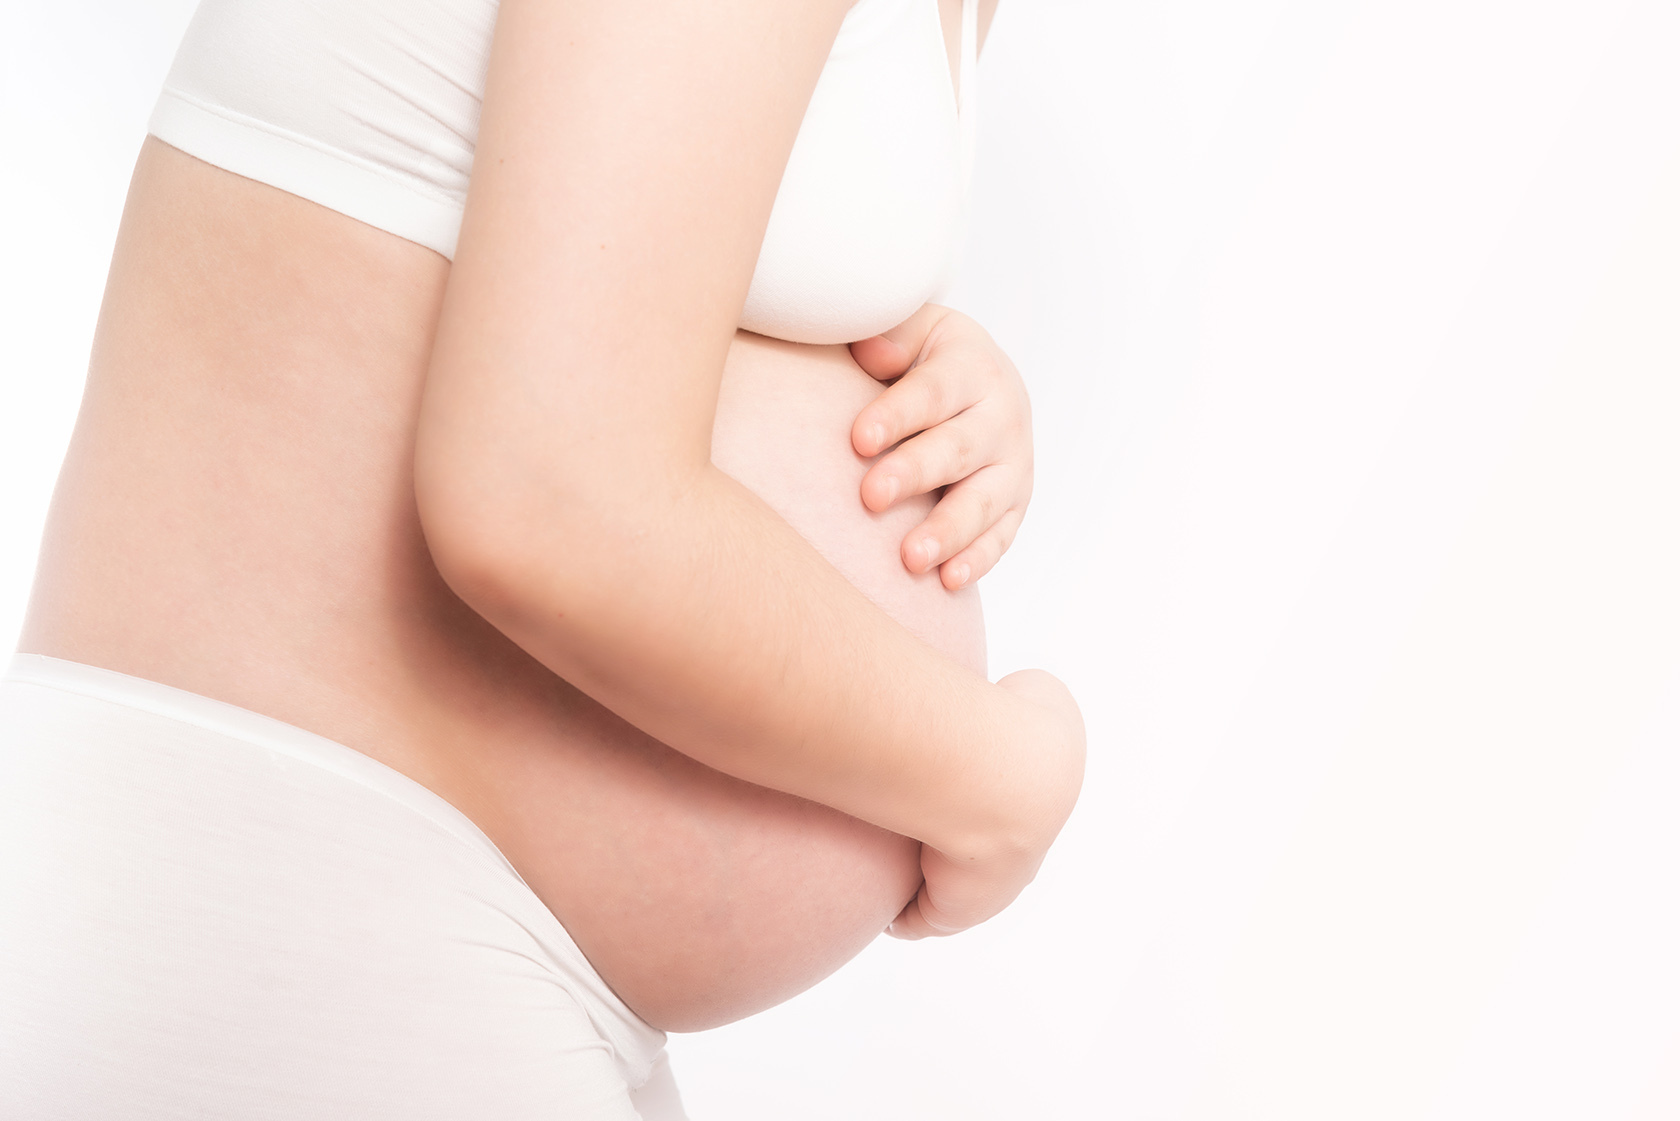 Переношенная беременность - Гинекология и акушерство - Справочник MSD Профессиональная версия